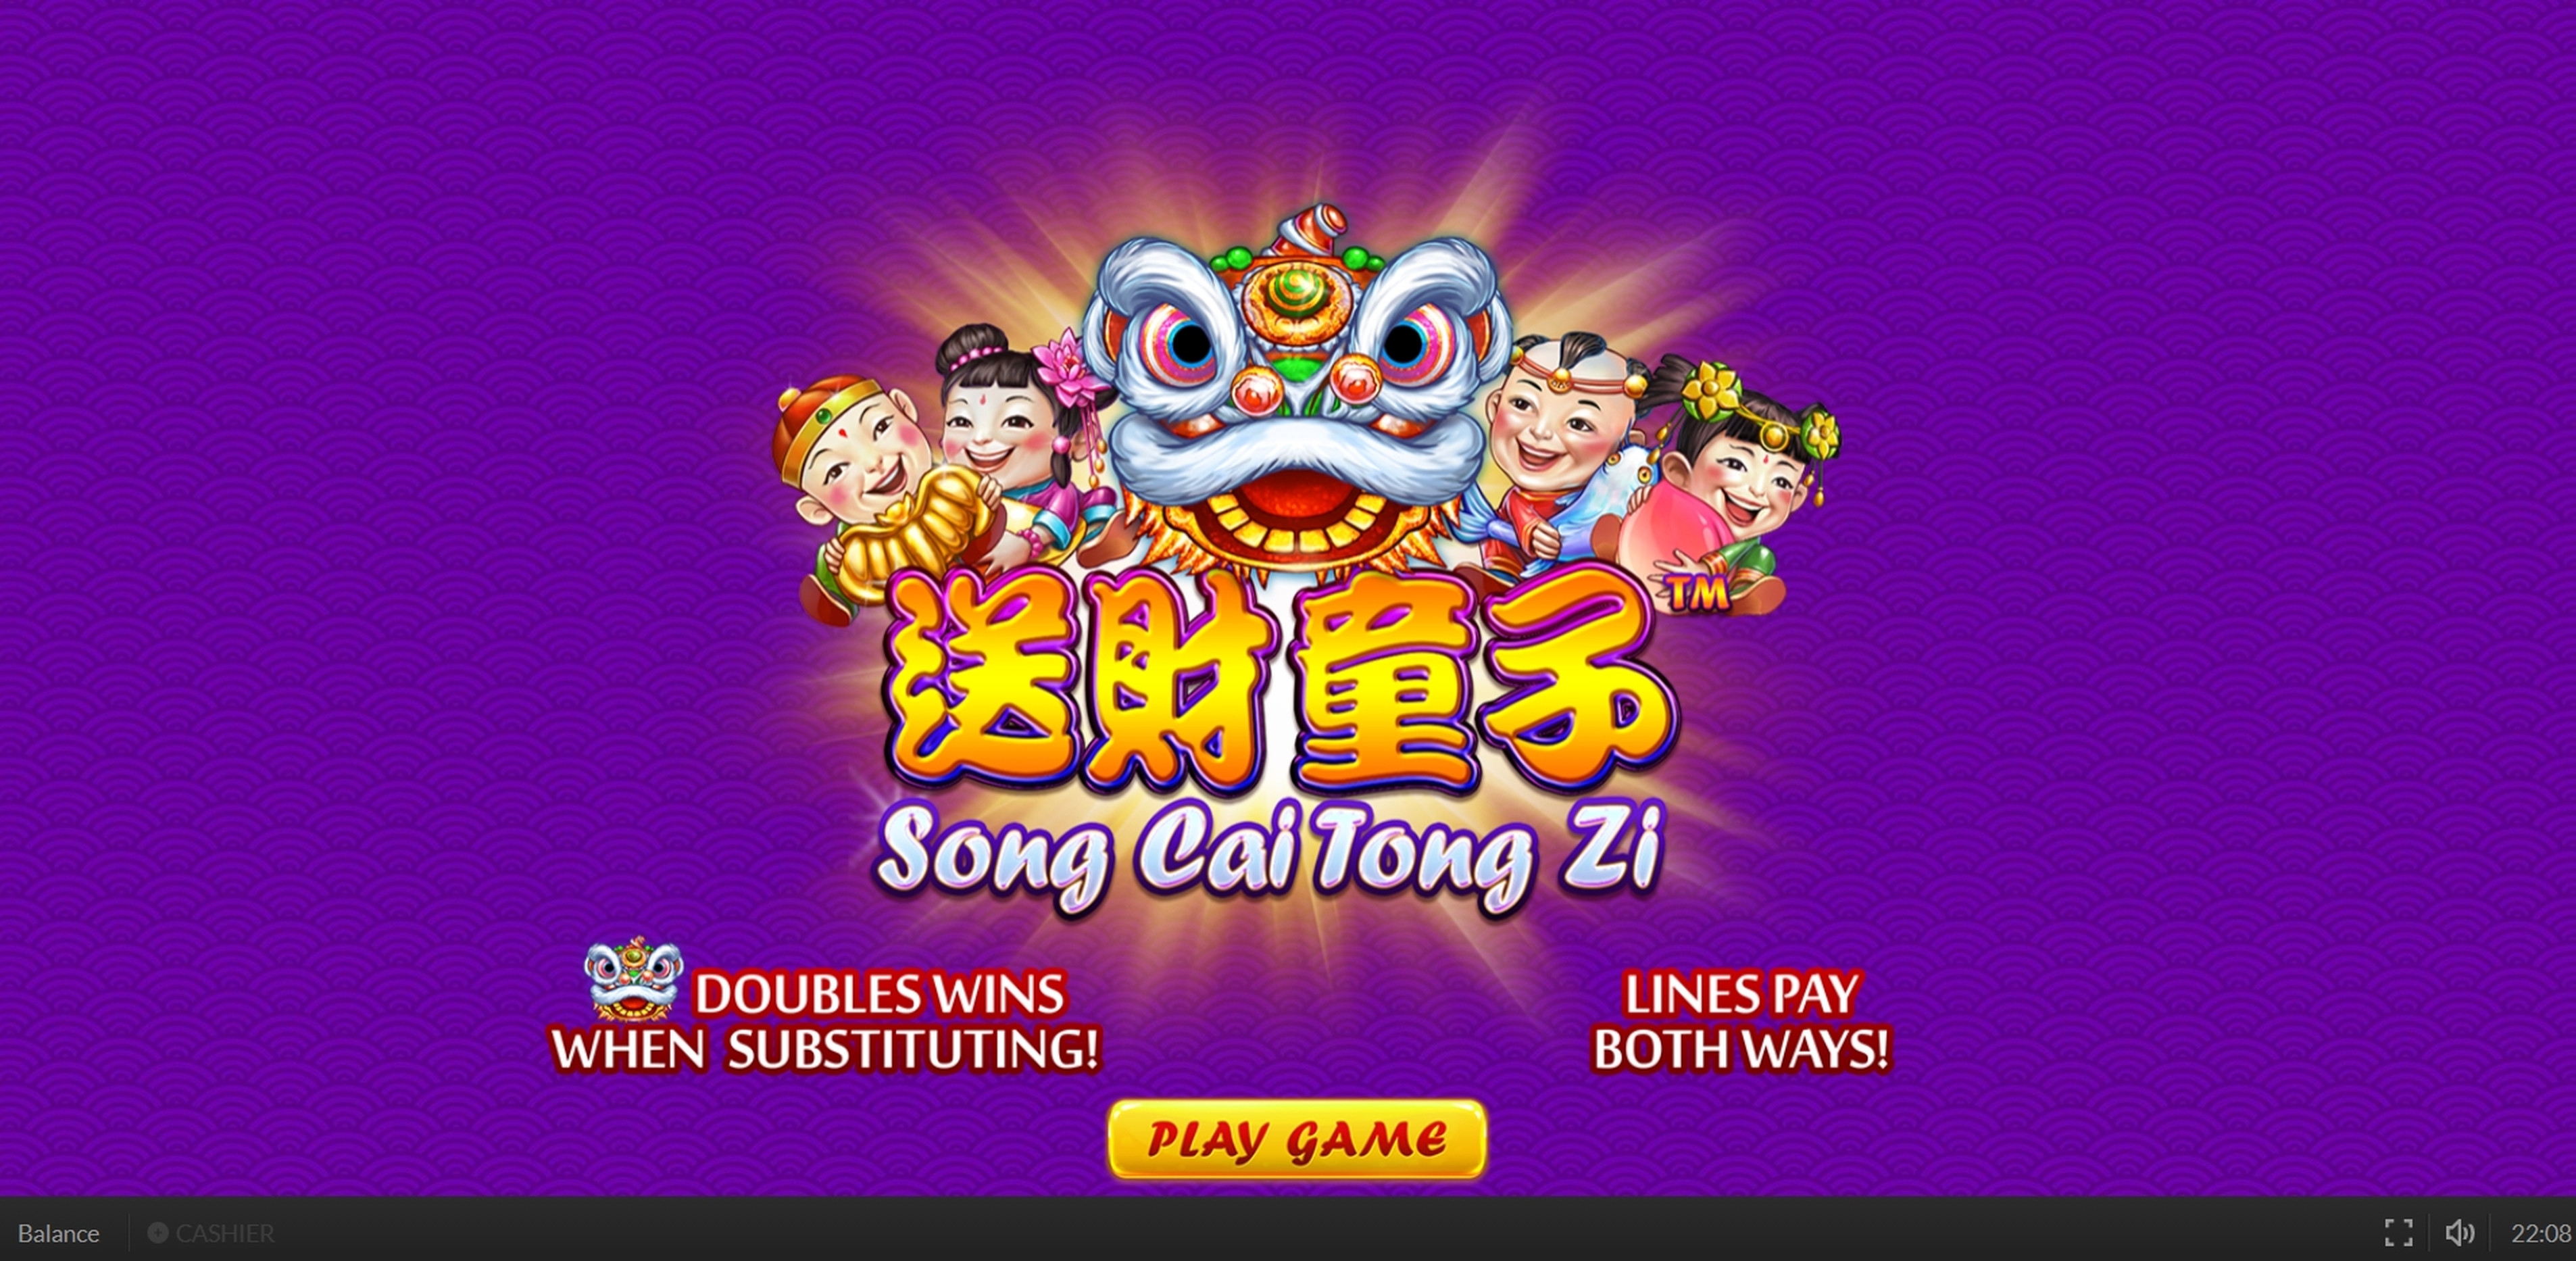 Song Cai Tong Zi demo